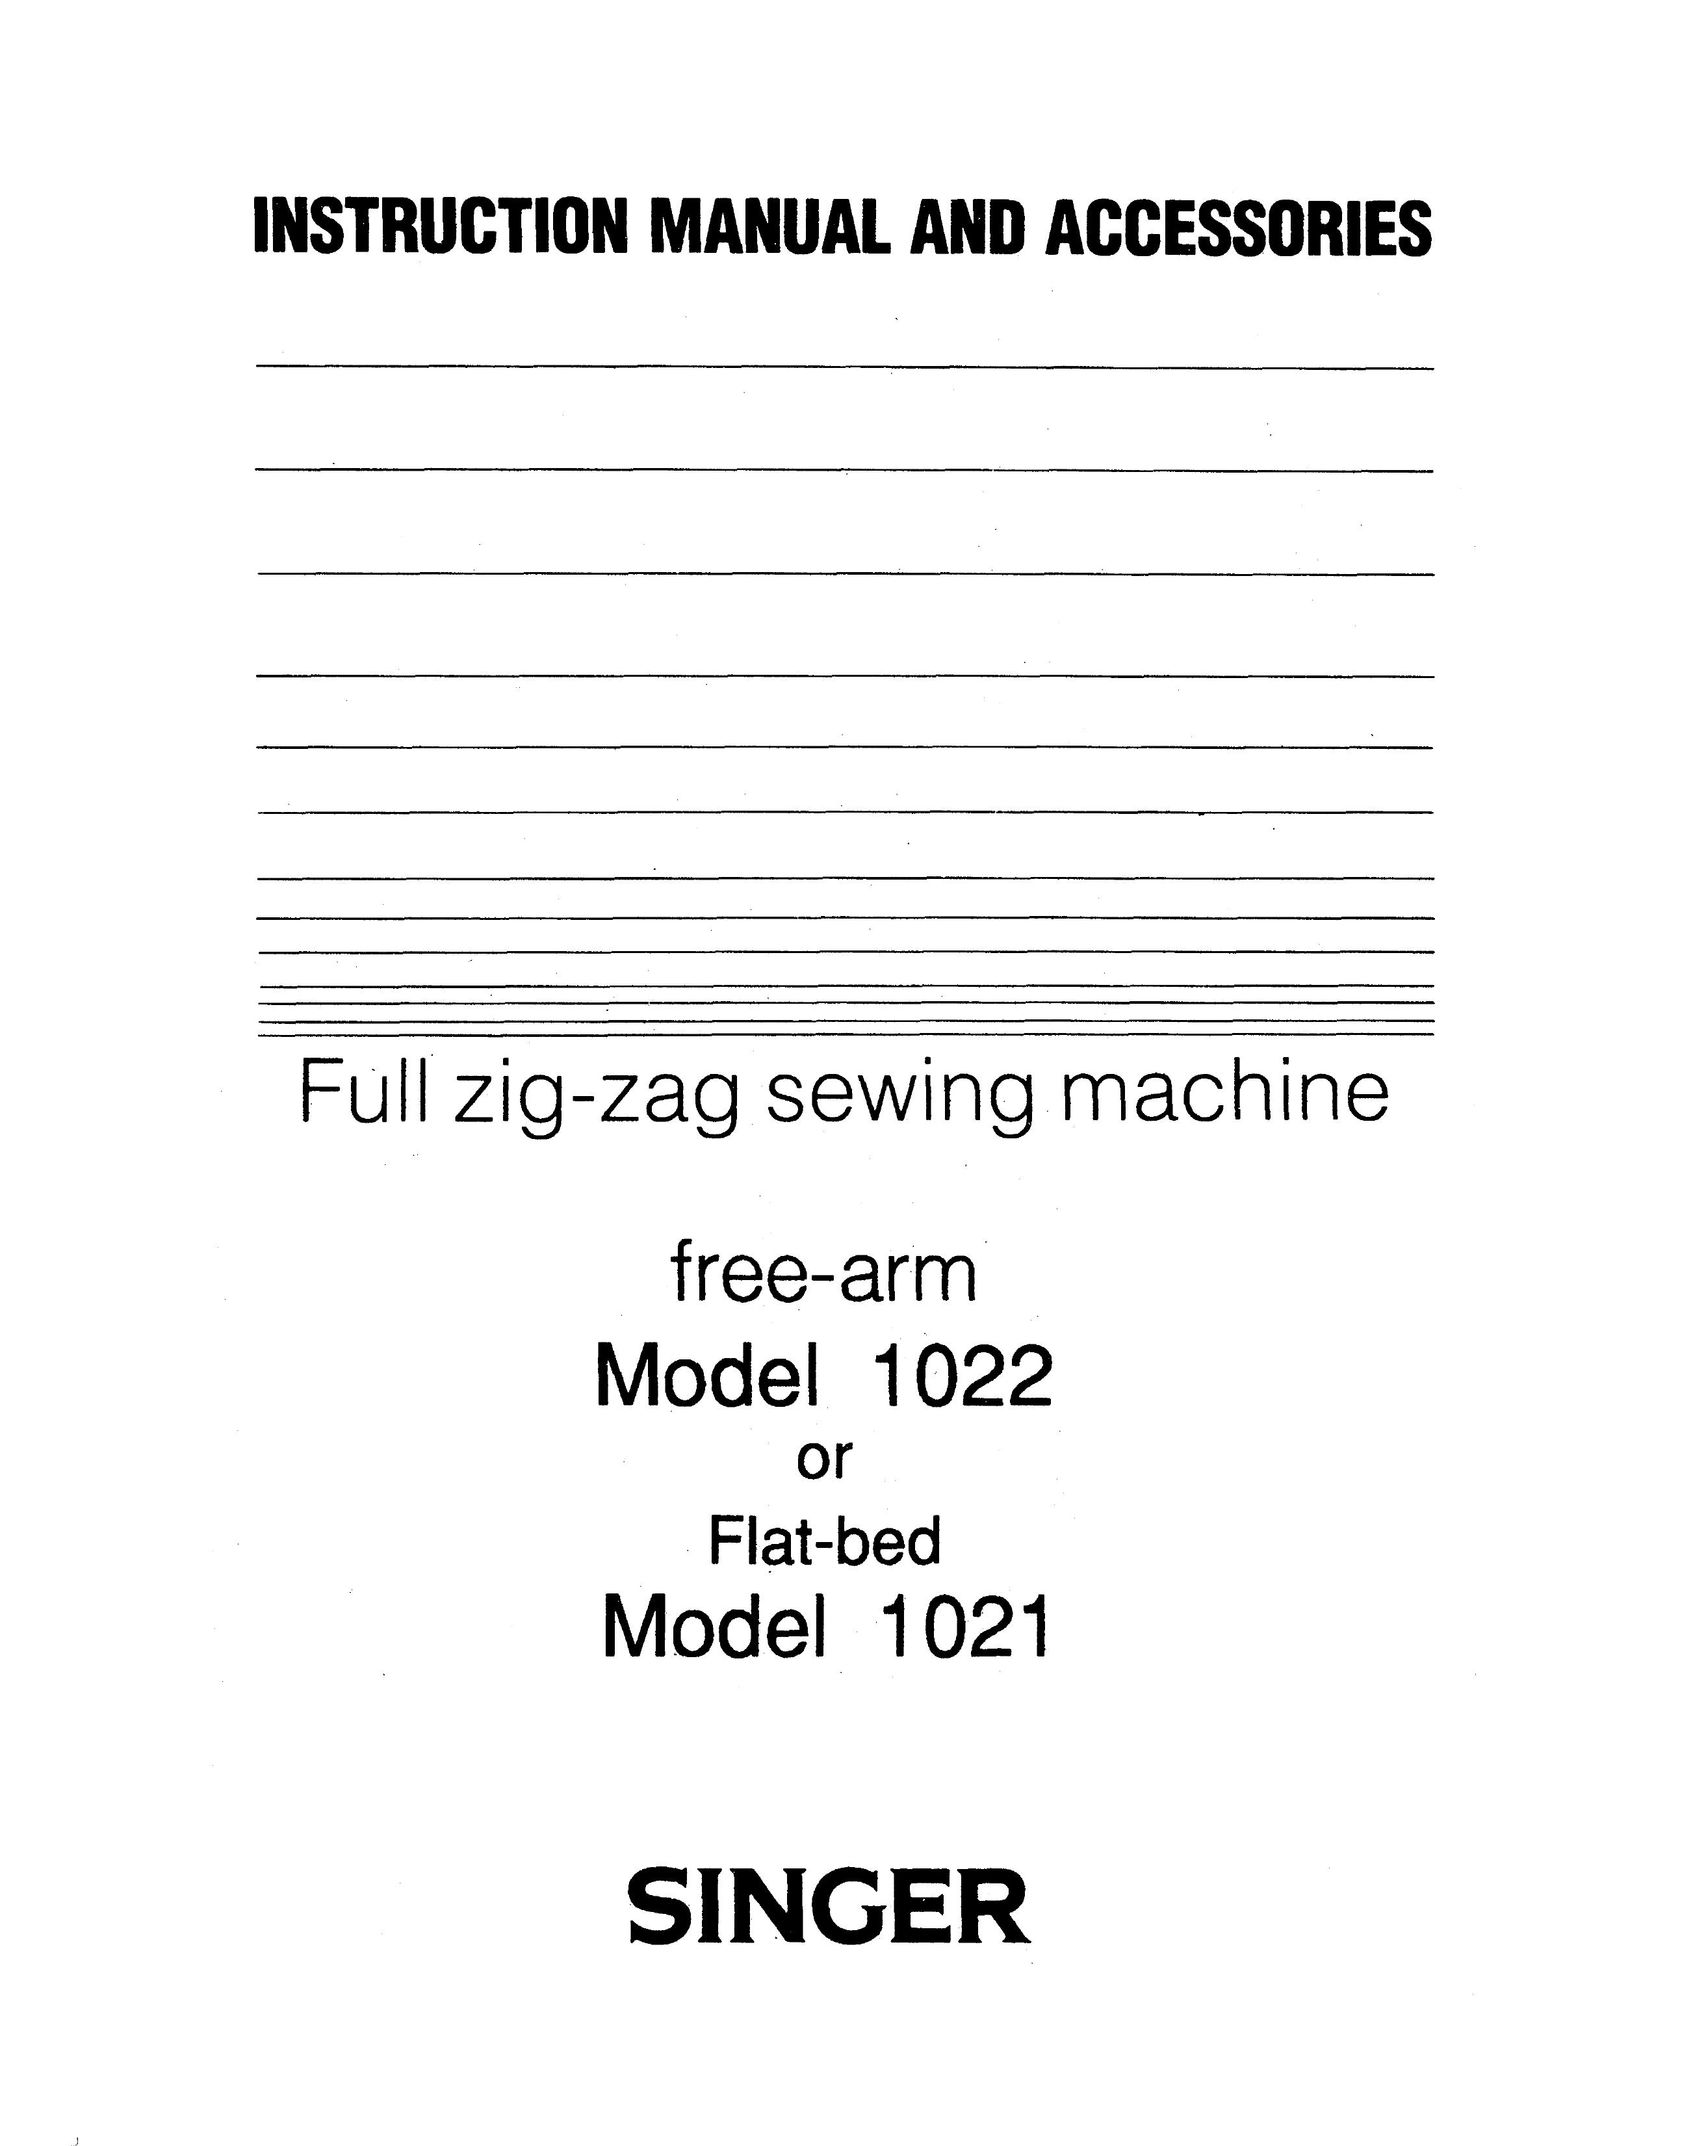 Singer 1021 Sewing Machine User Manual